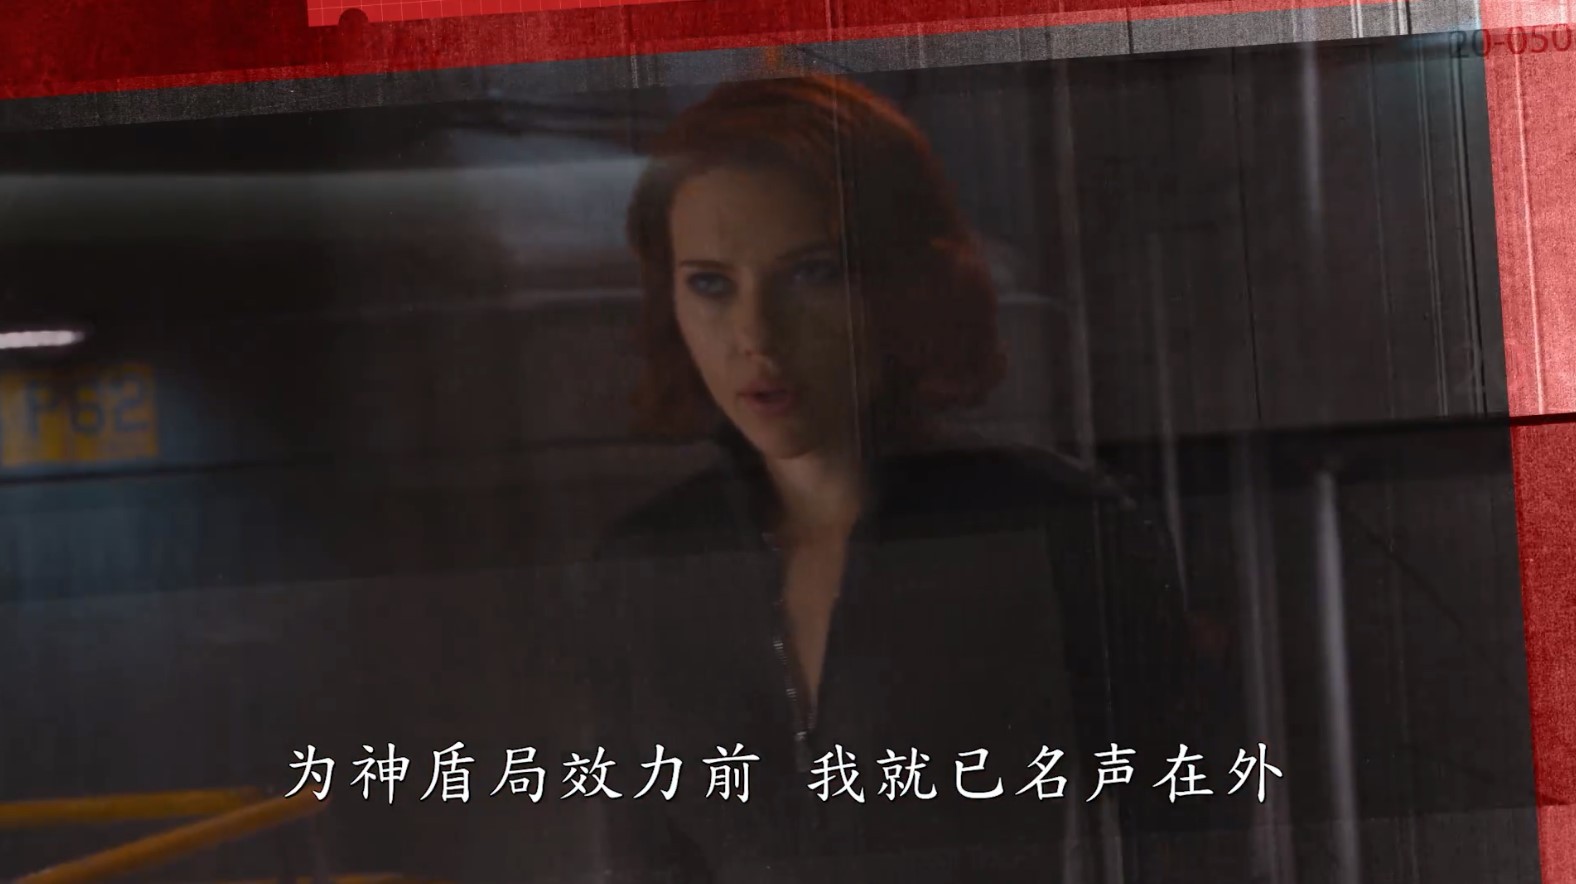 漫威发布《黑寡妇》超级英雄日特辑 7月9日上映